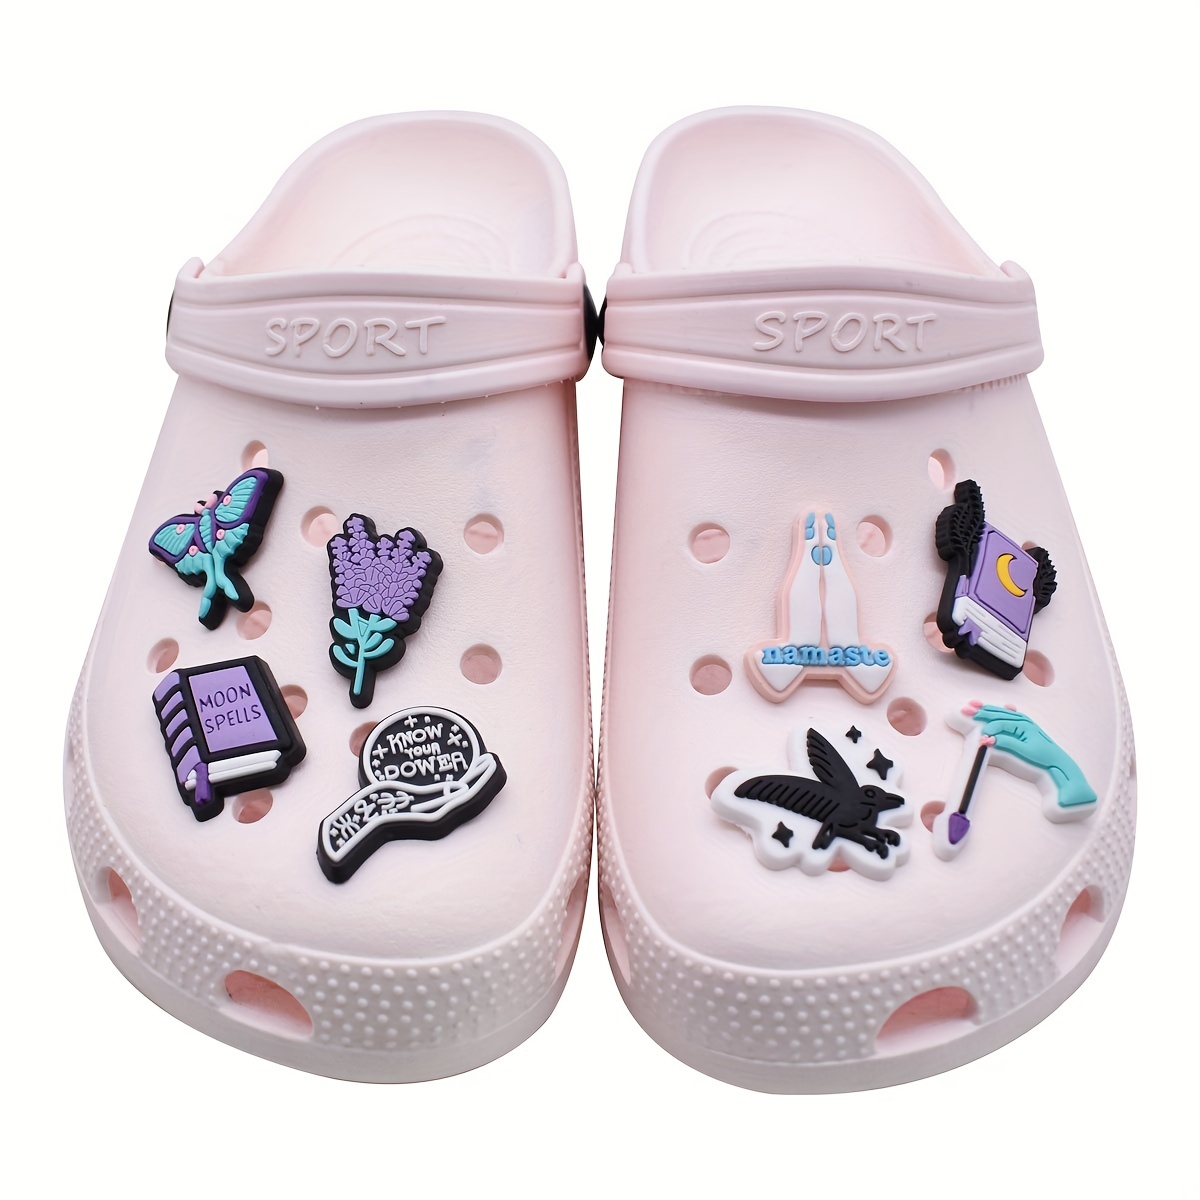 Harry potter Crocs Jibbitz Soft PVC Rubber Shoe lace Charms For Kids Shoes  Decoration